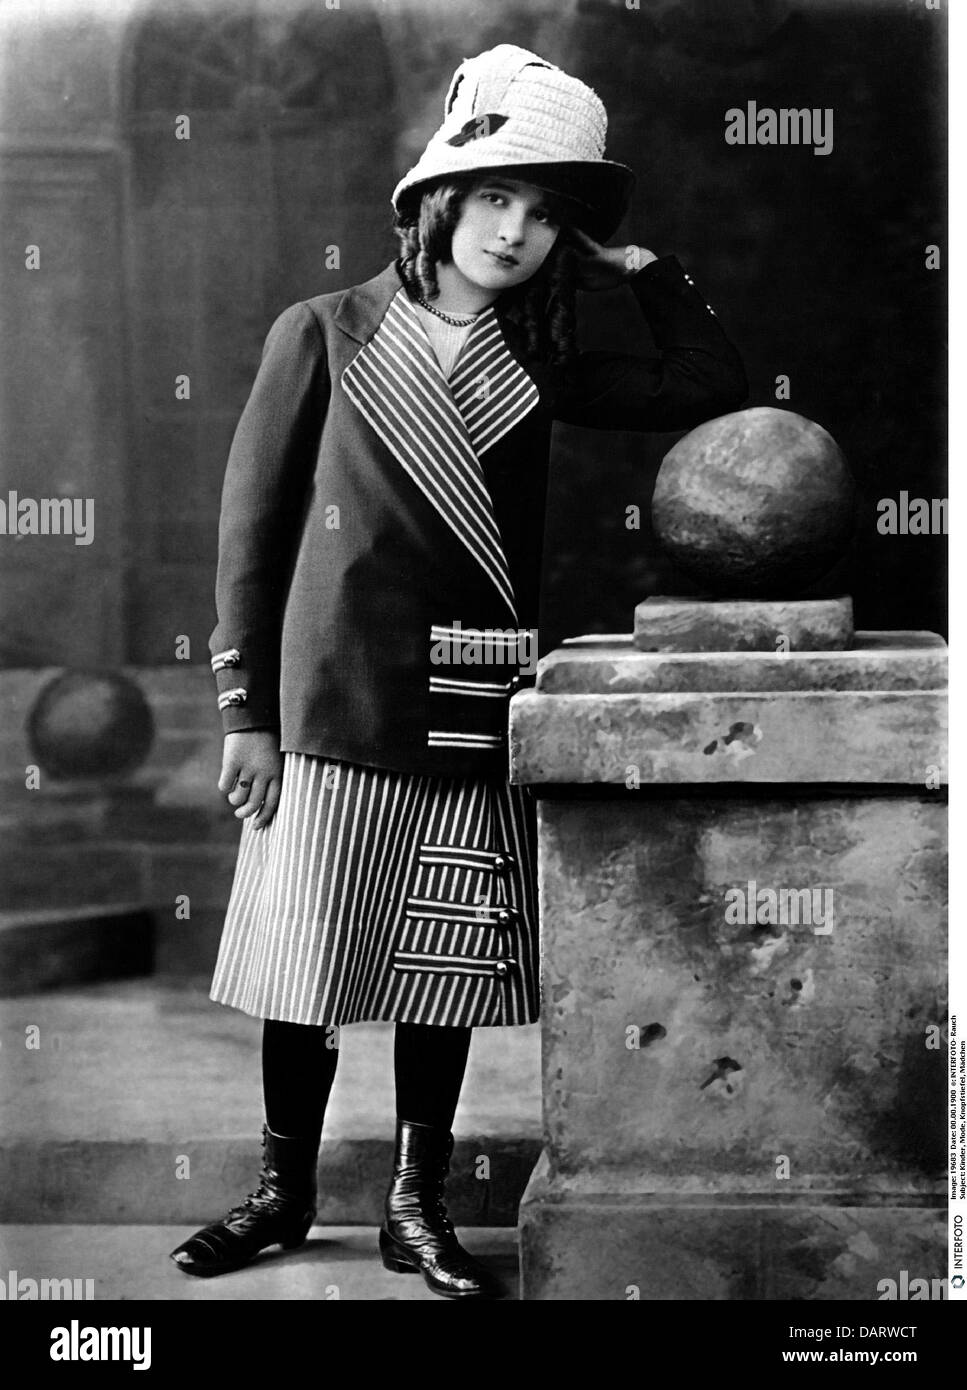 Menschen, Kinder, Mädchen (ca. 10 Jahre alt), volle Länge, ca. 1900, zusätzliche-Rechte-Clearenzen-nicht verfügbar Stockfoto